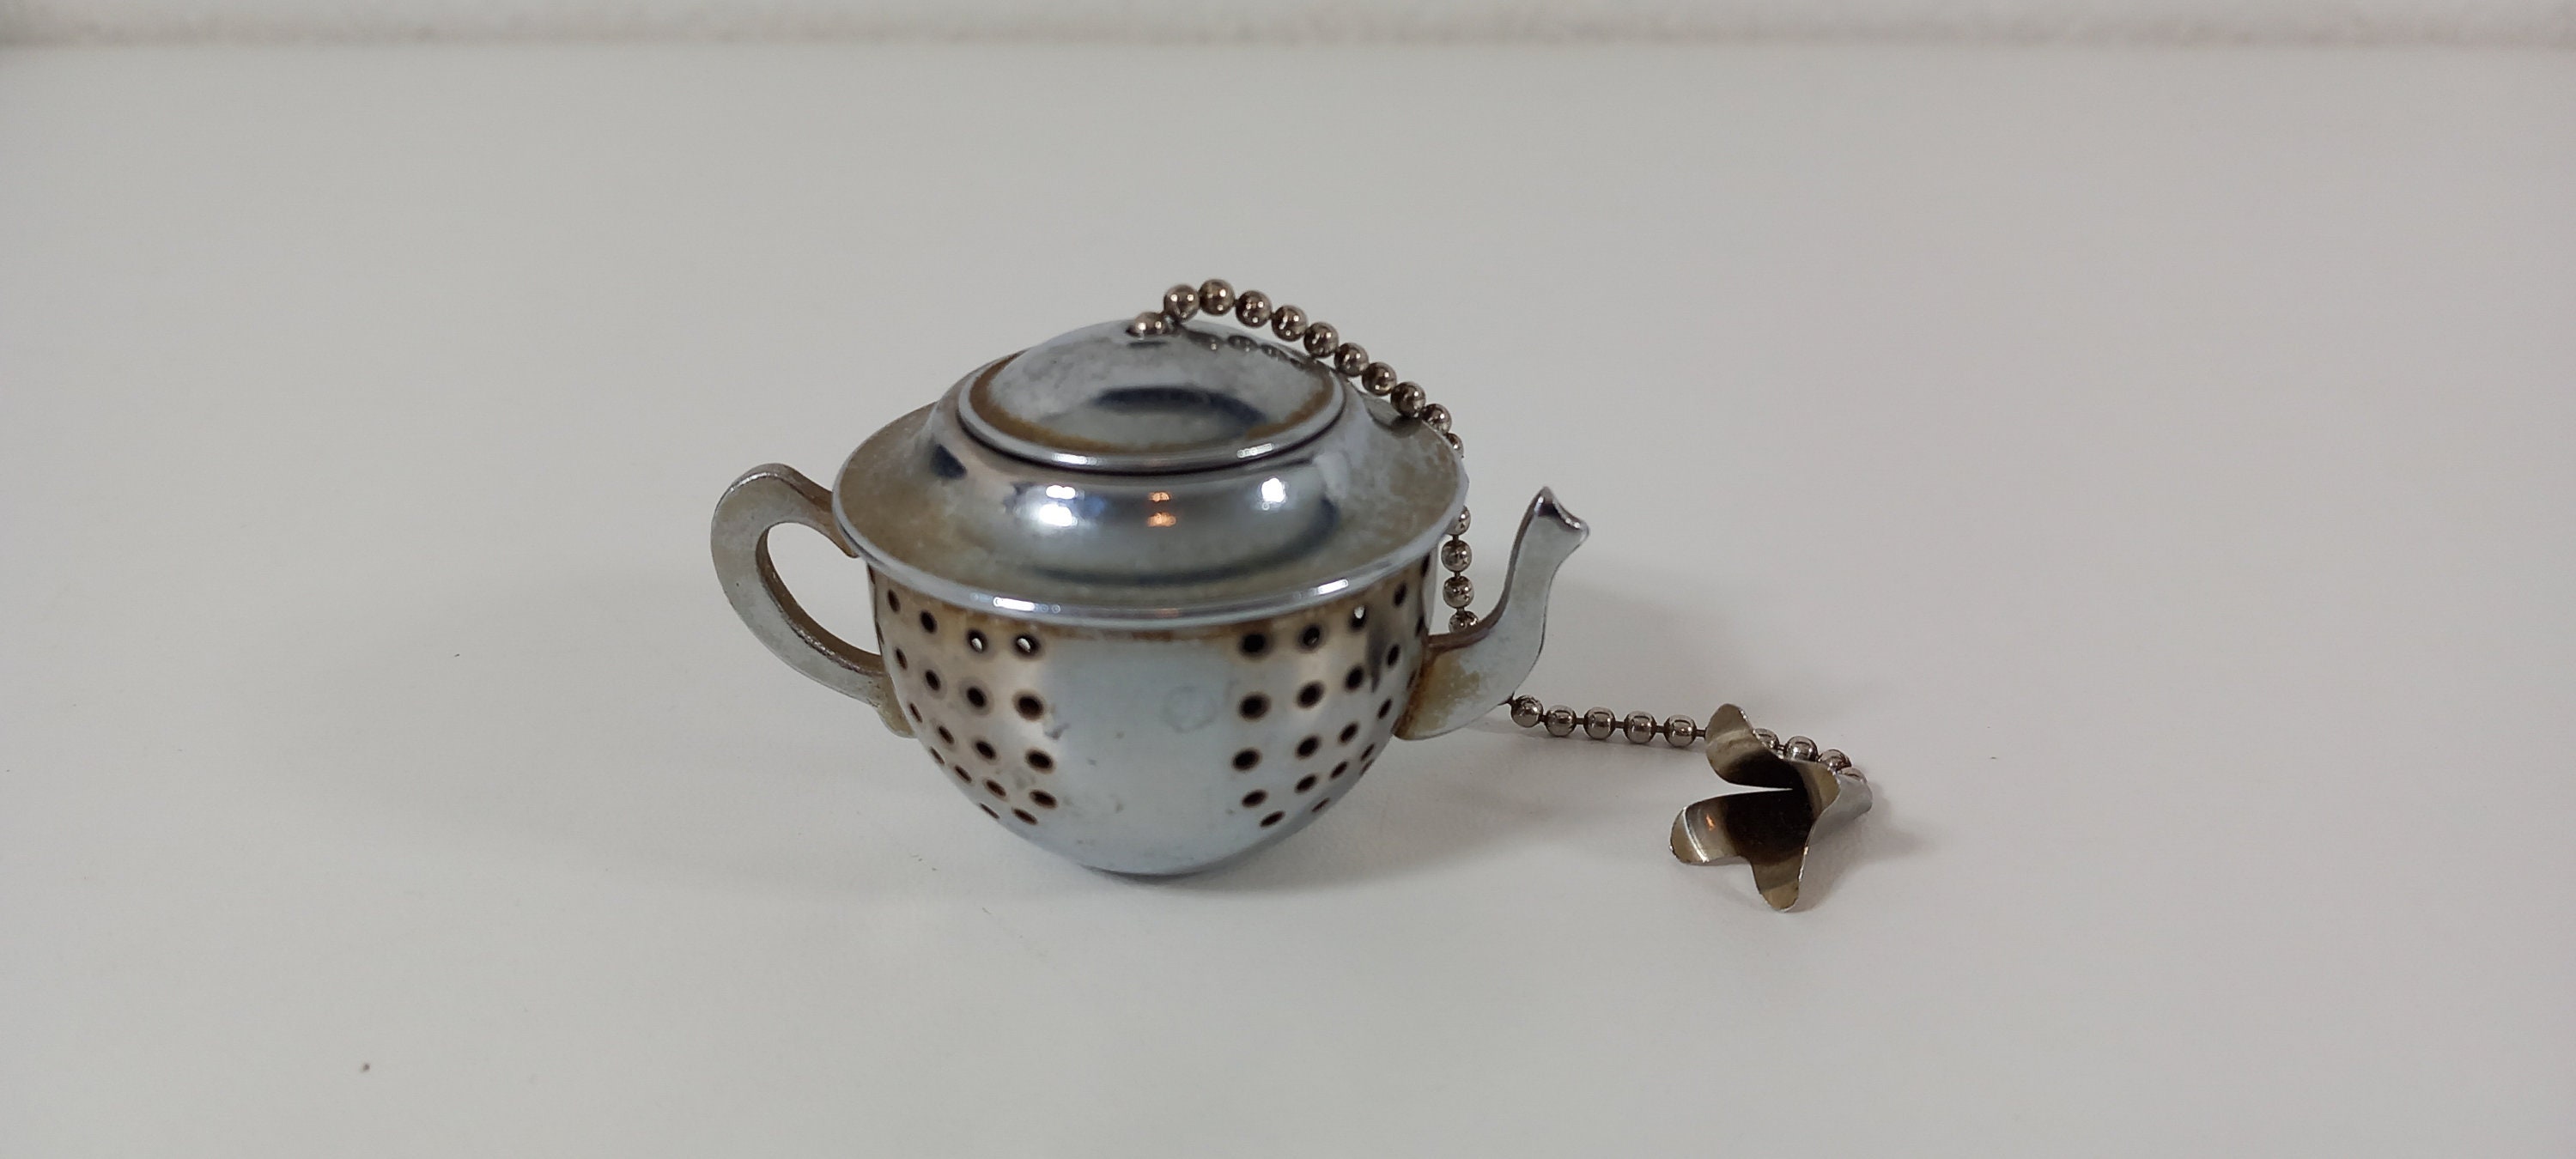 passoire à thé/ustensile de cuisine en métal vintage, france